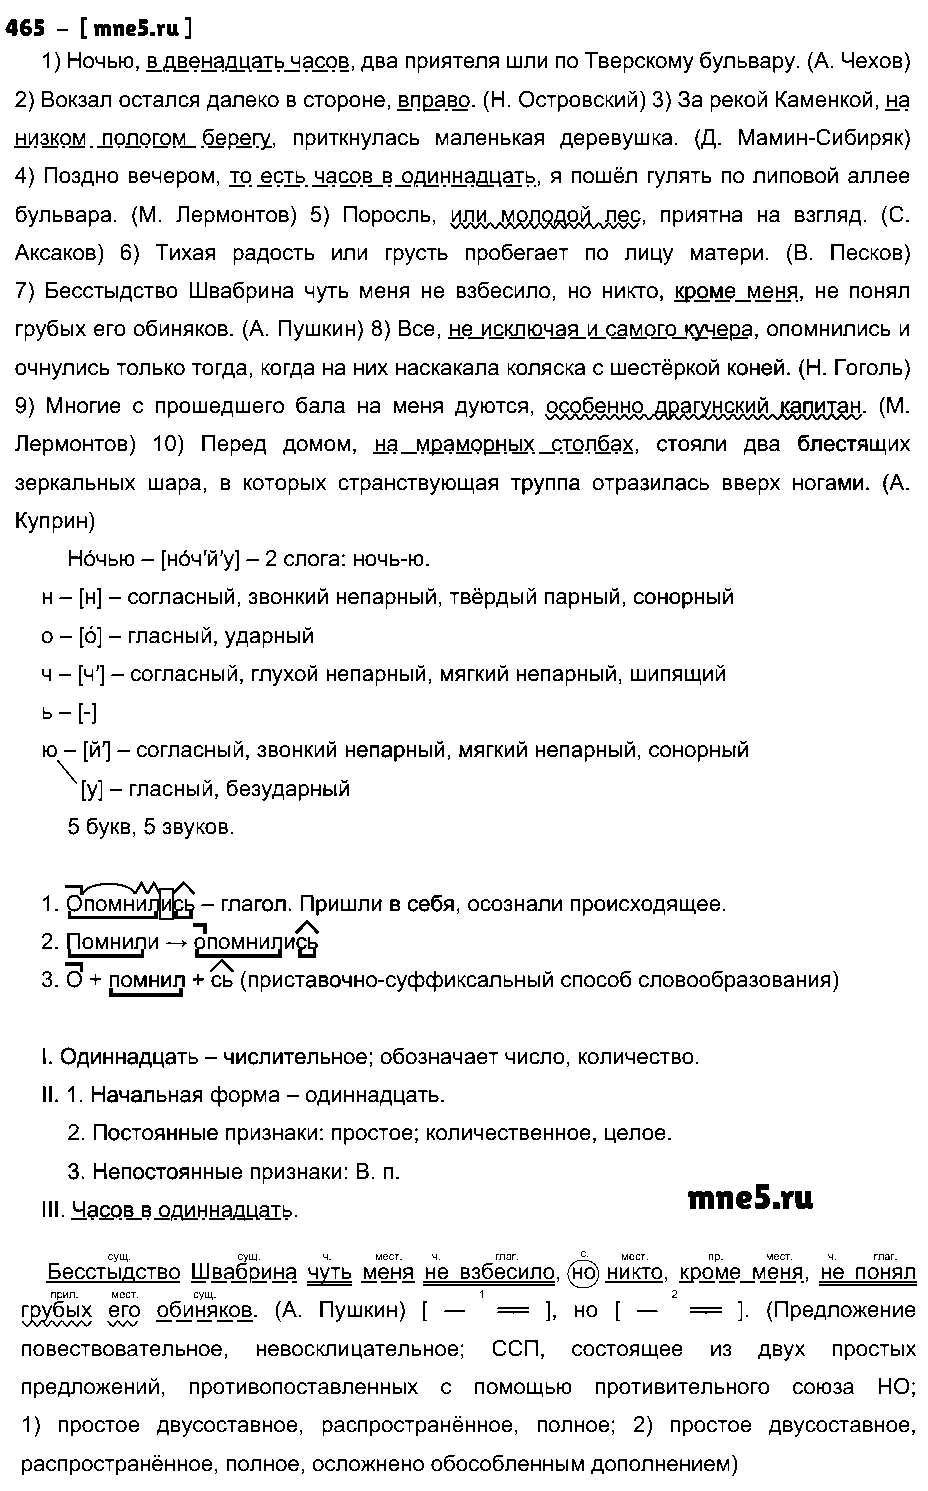 ГДЗ Русский язык 9 класс - 465